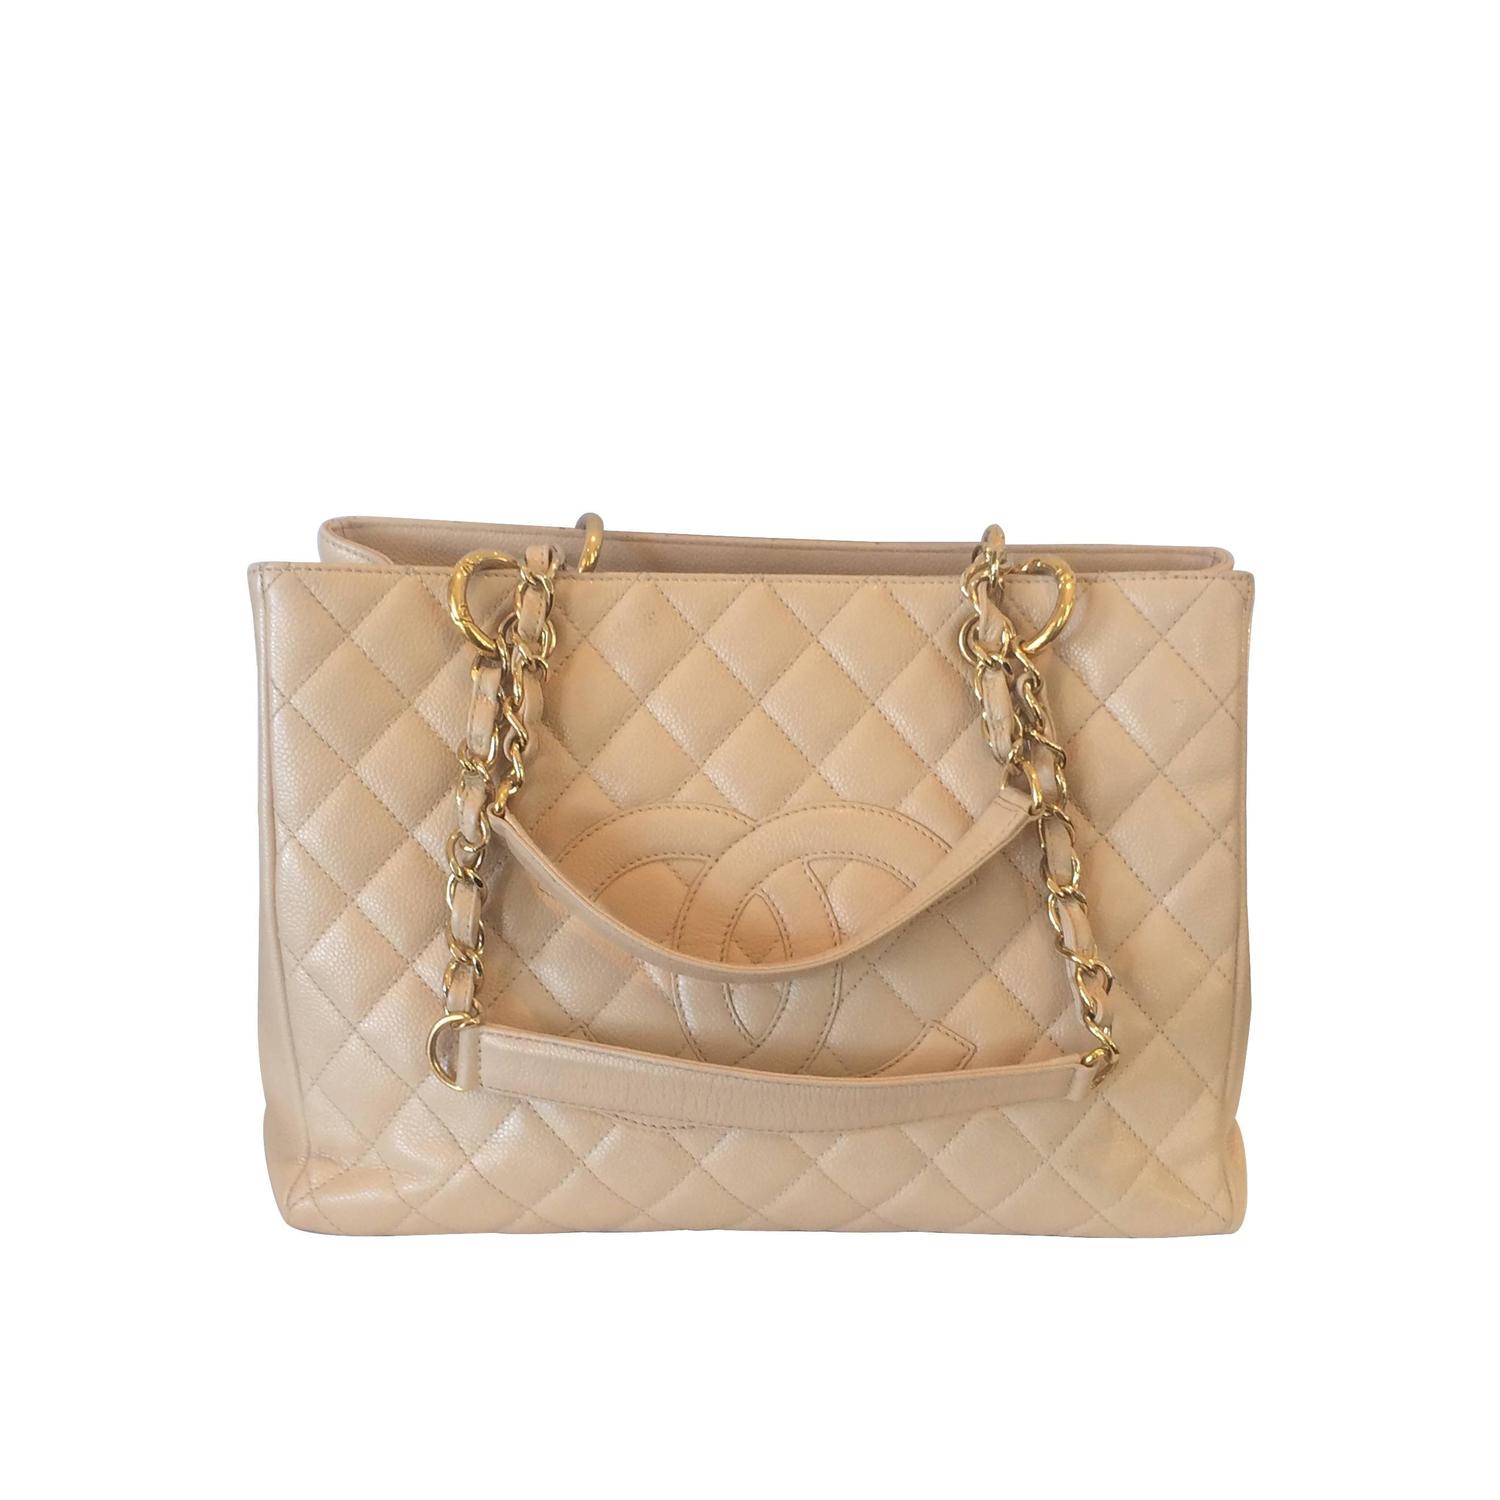 Chanel beige Matelasse Oyster Leather shoulder bag purse at 1stdibs